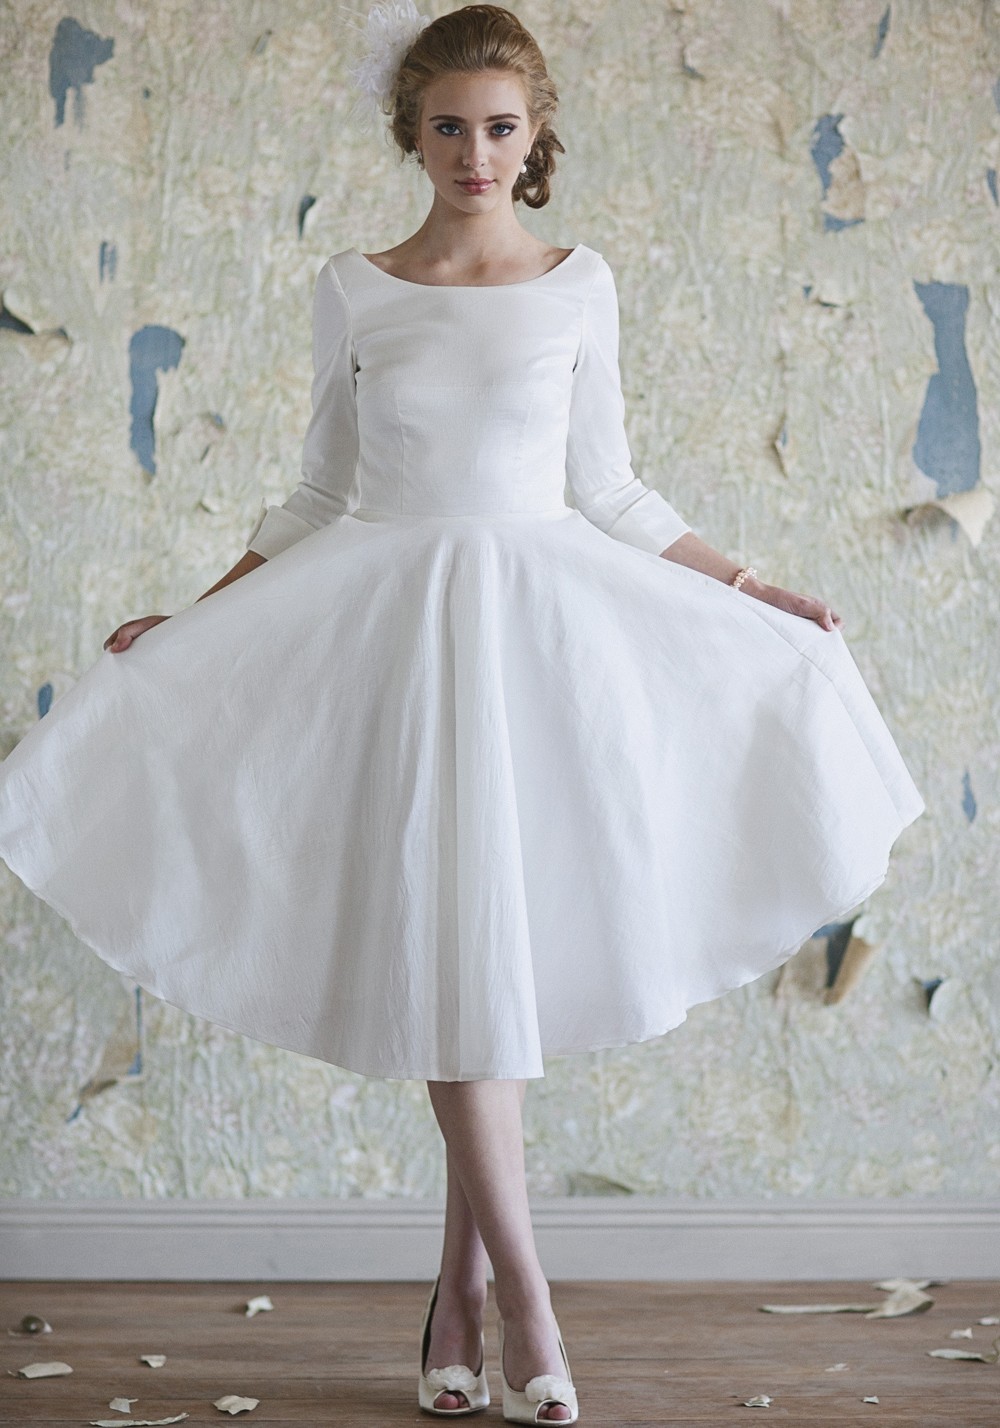 27 Inspiring Ideas of Tea Length Wedding Dresses The